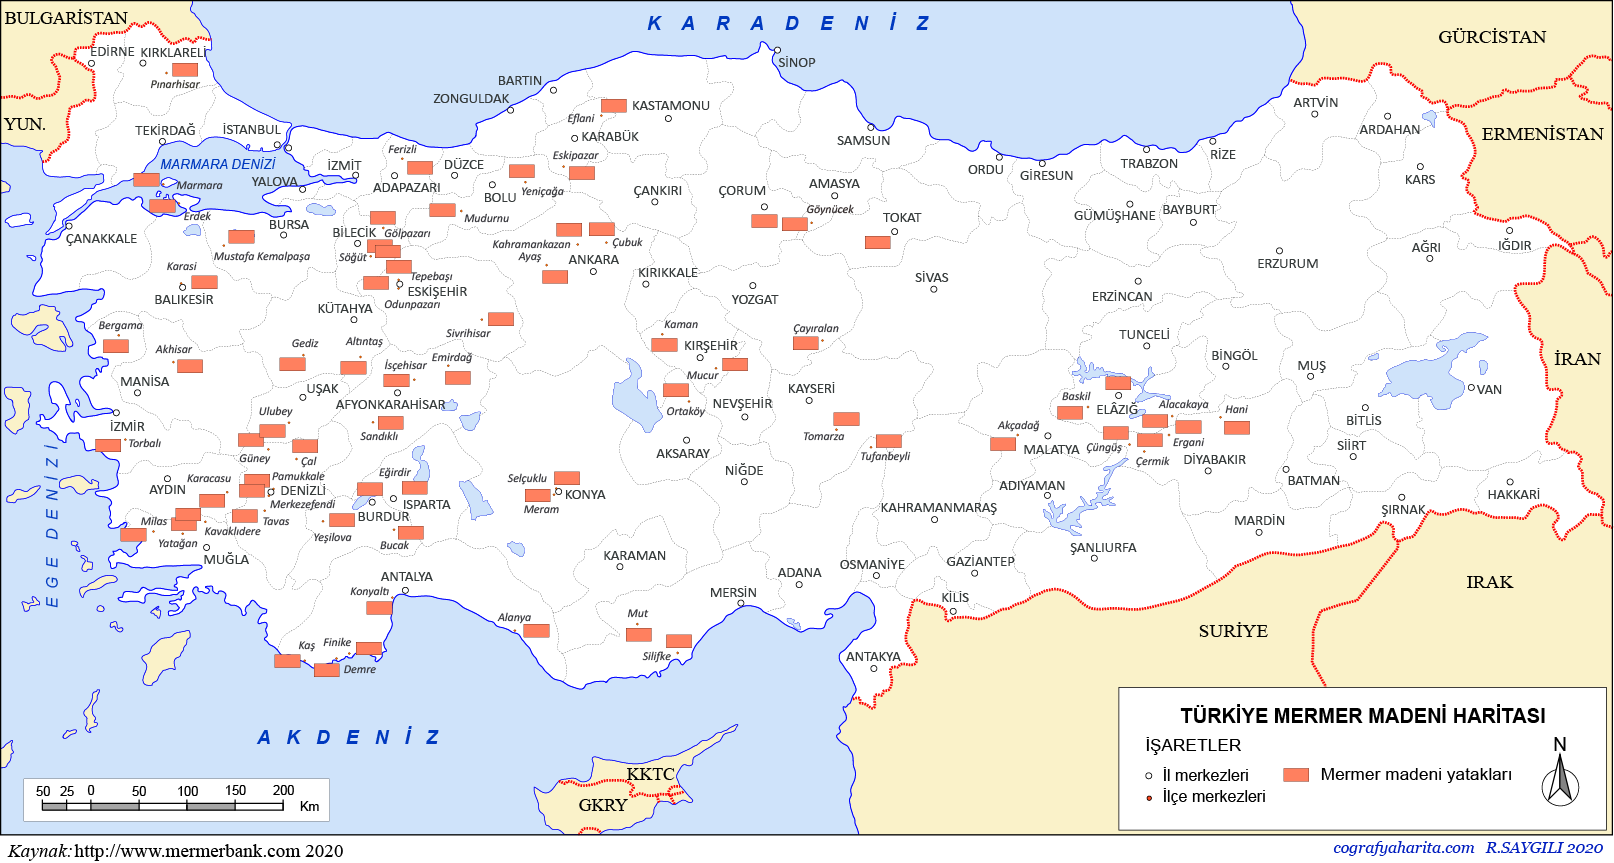 turkiye mermer madeni haritasi mermer madenleri nerede hangi illerde bulunur ve nasil cikartilir